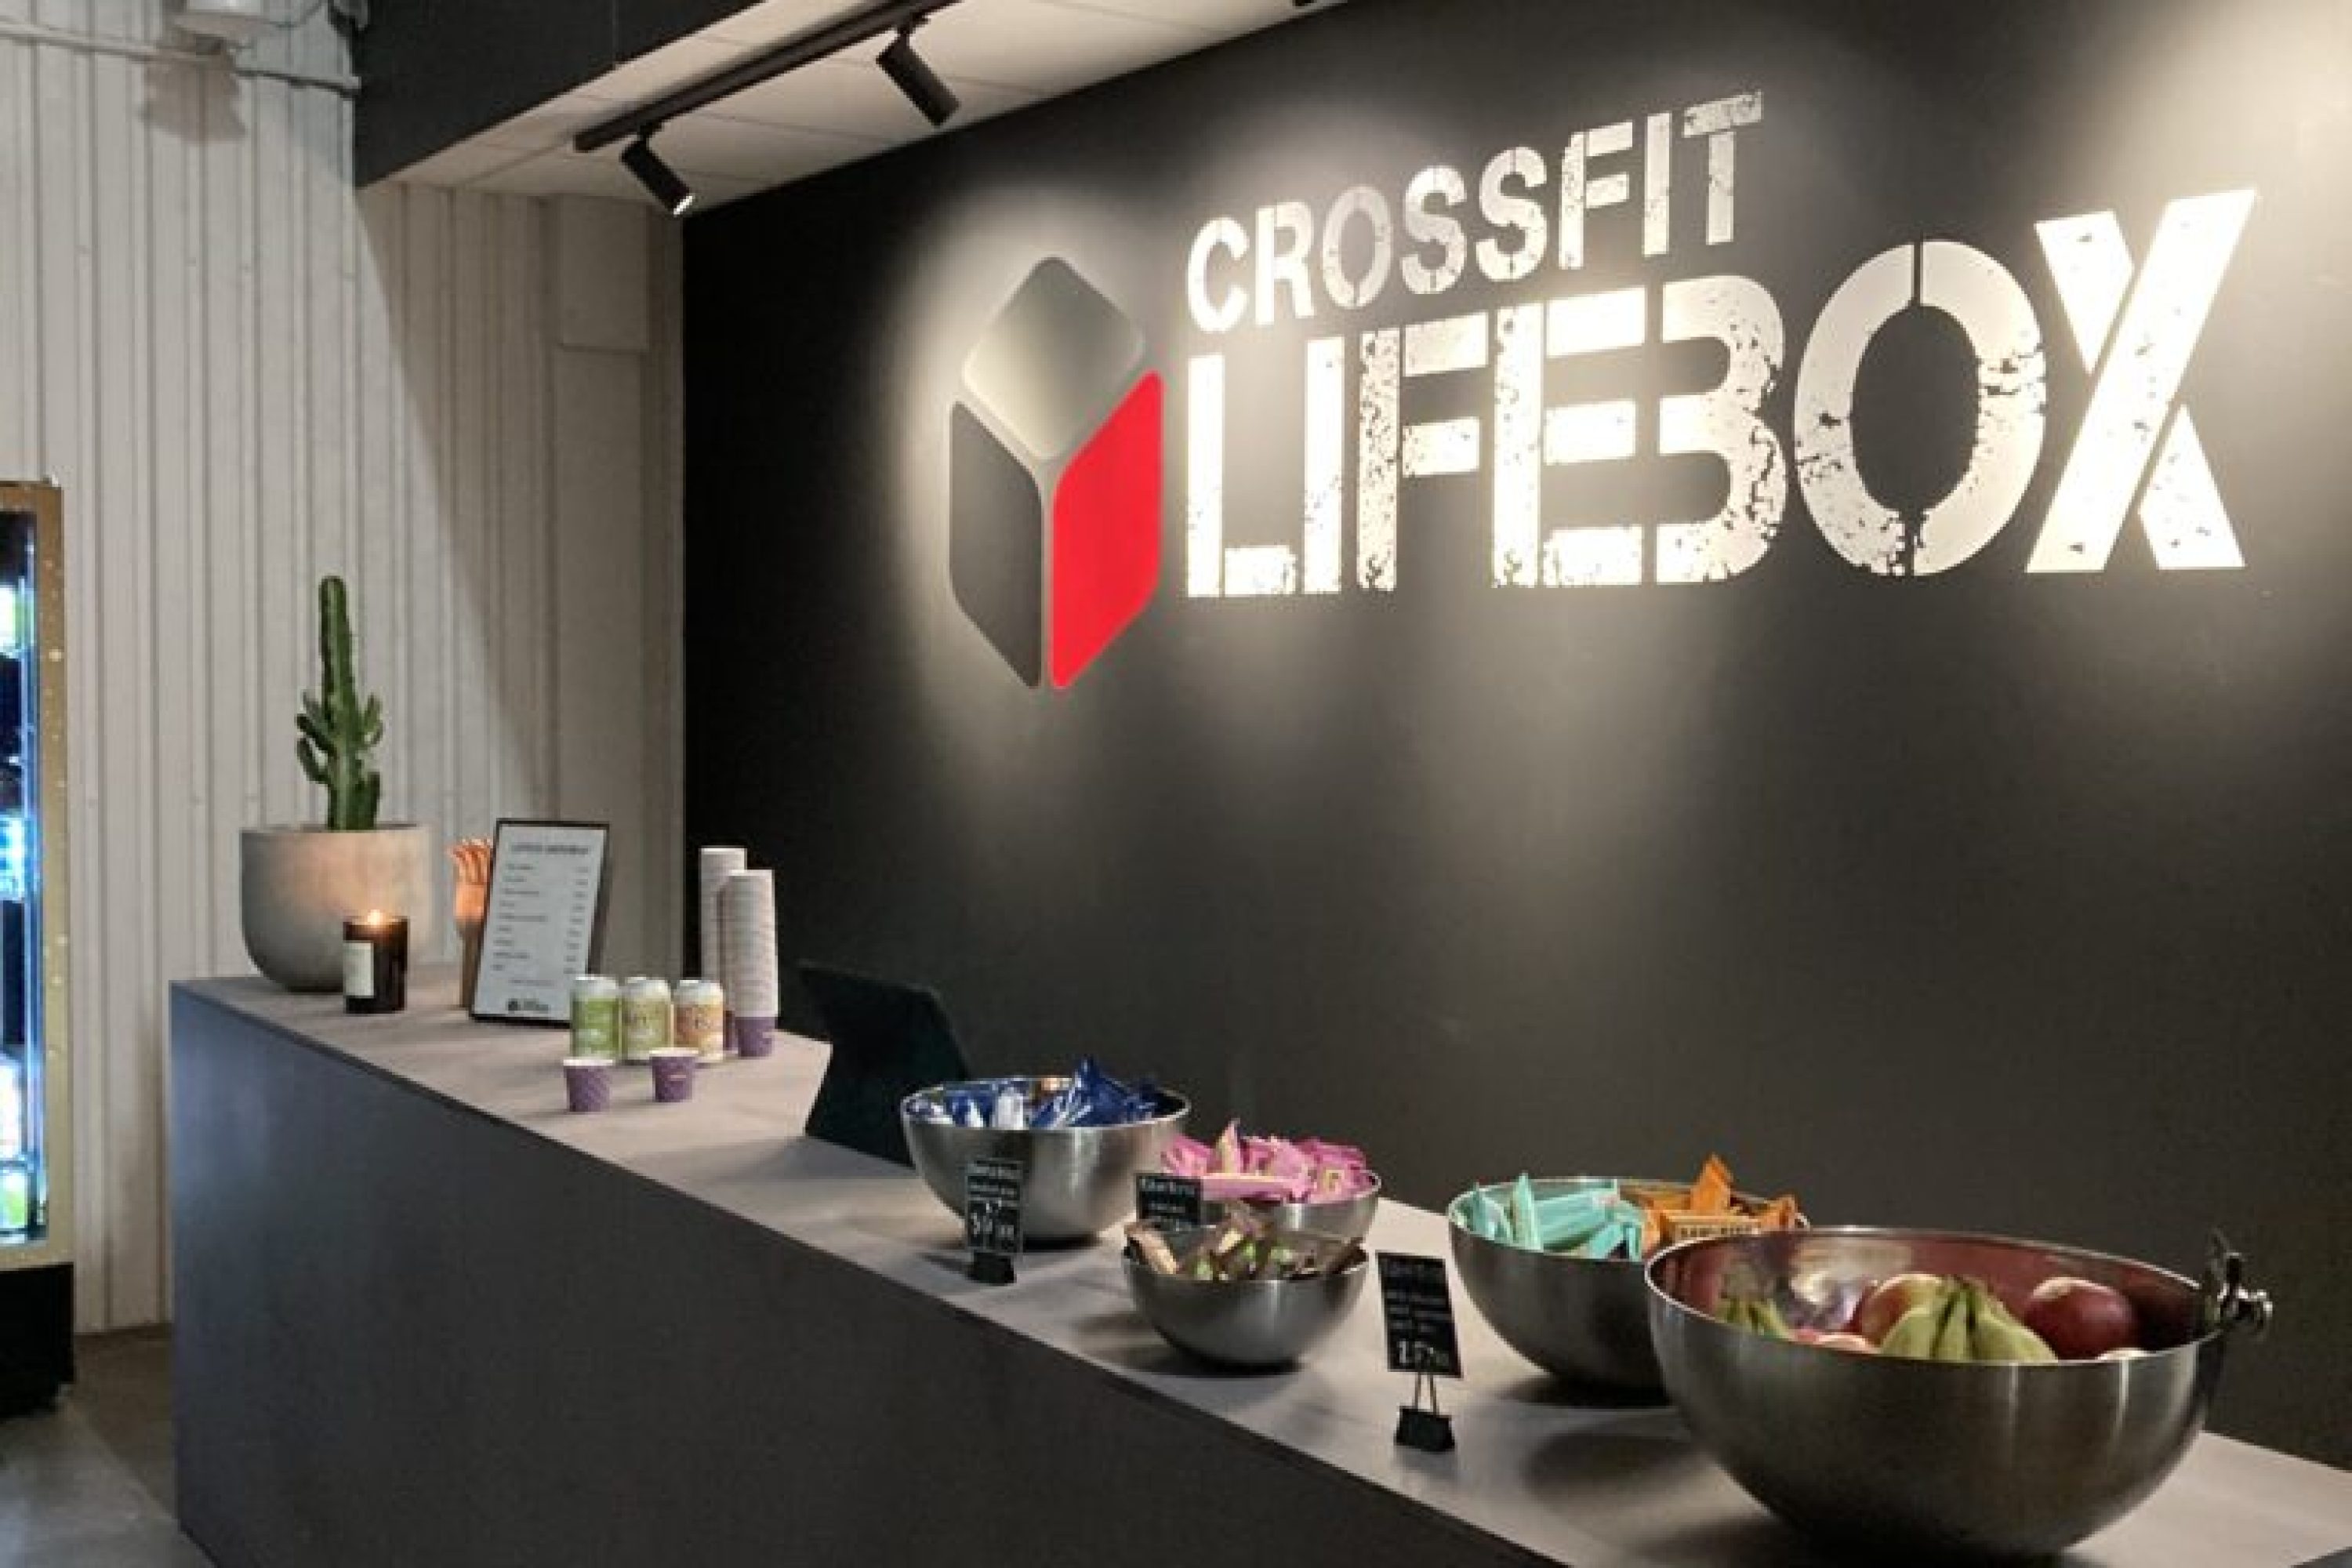 CROSSFIT LIFEBOX – CrossFit LBK AB